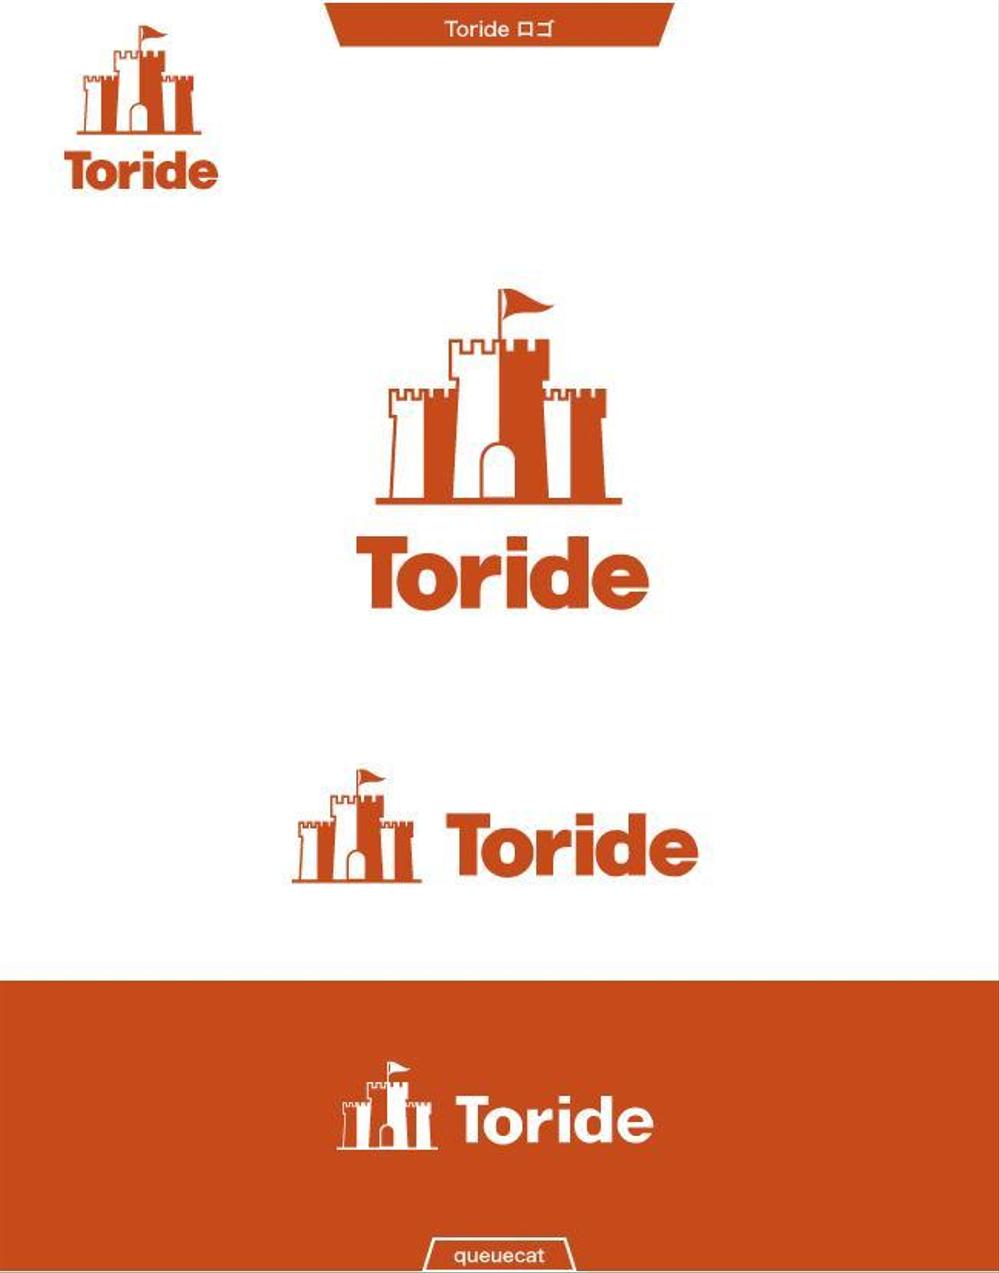 Toride2_1.jpg